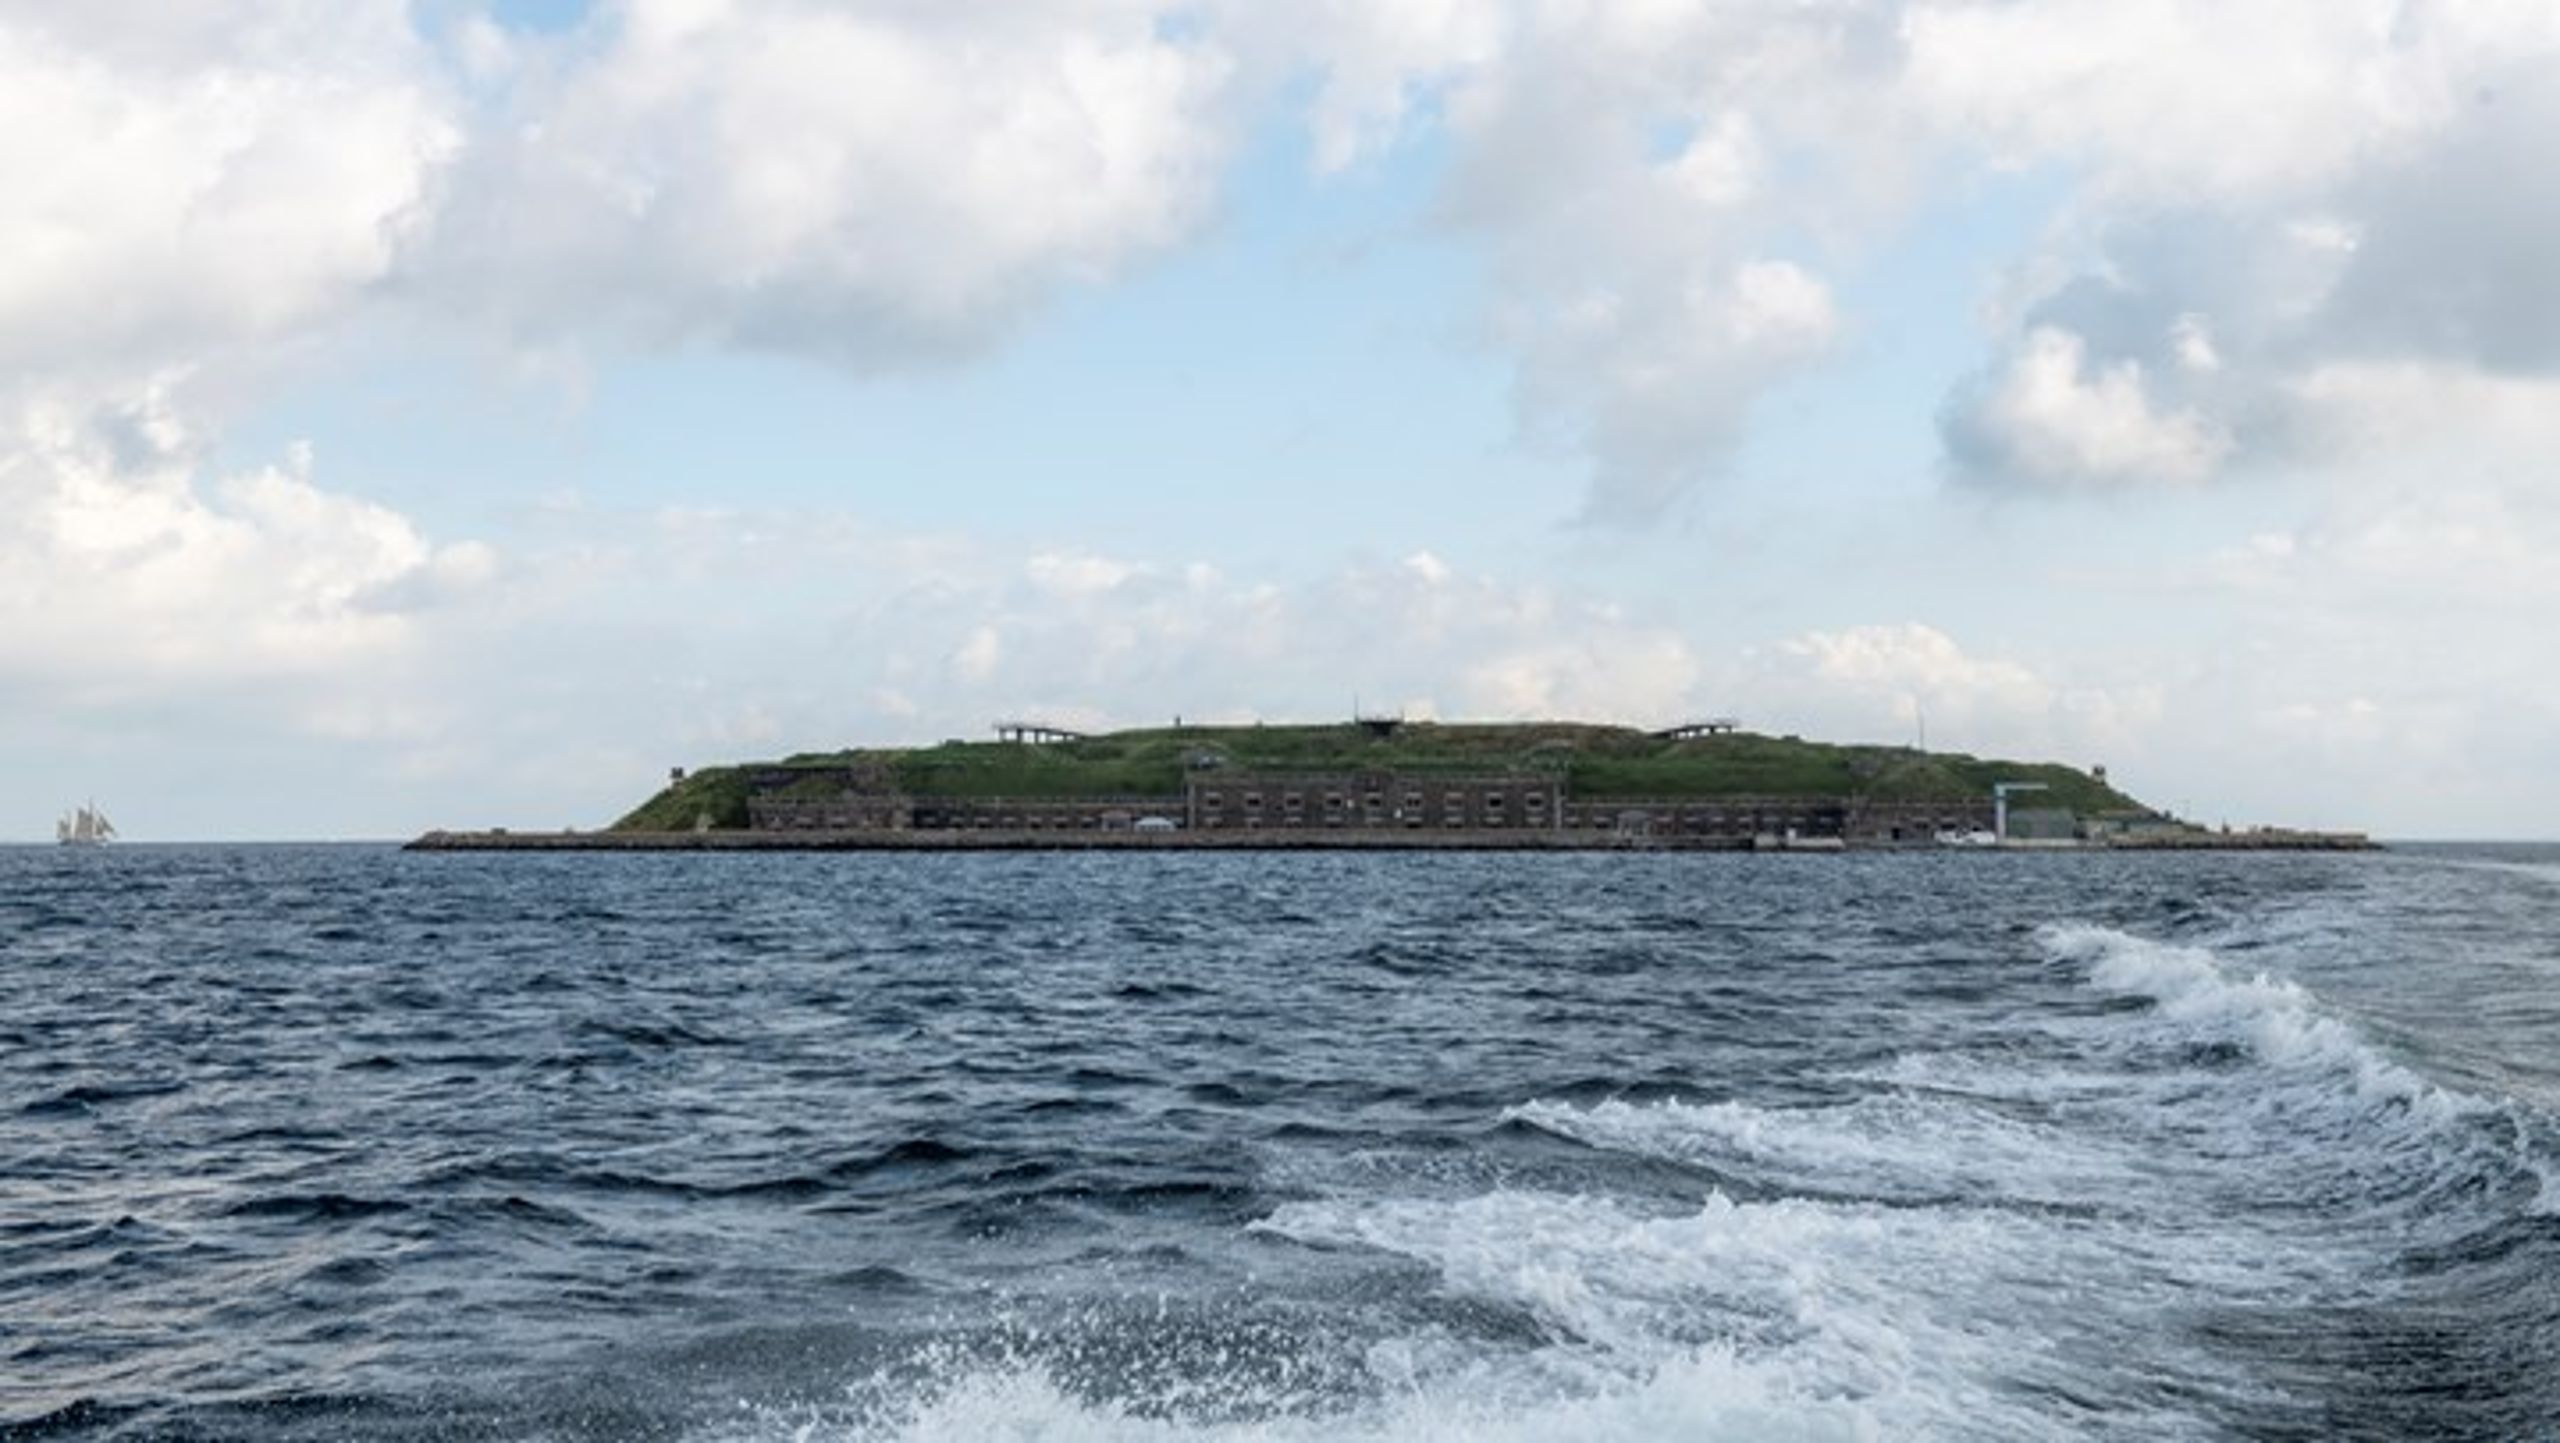 Fra Ungdomsøens åbning den 24. august vil enhver kunne besøge øen med båd fra Nyhavn.